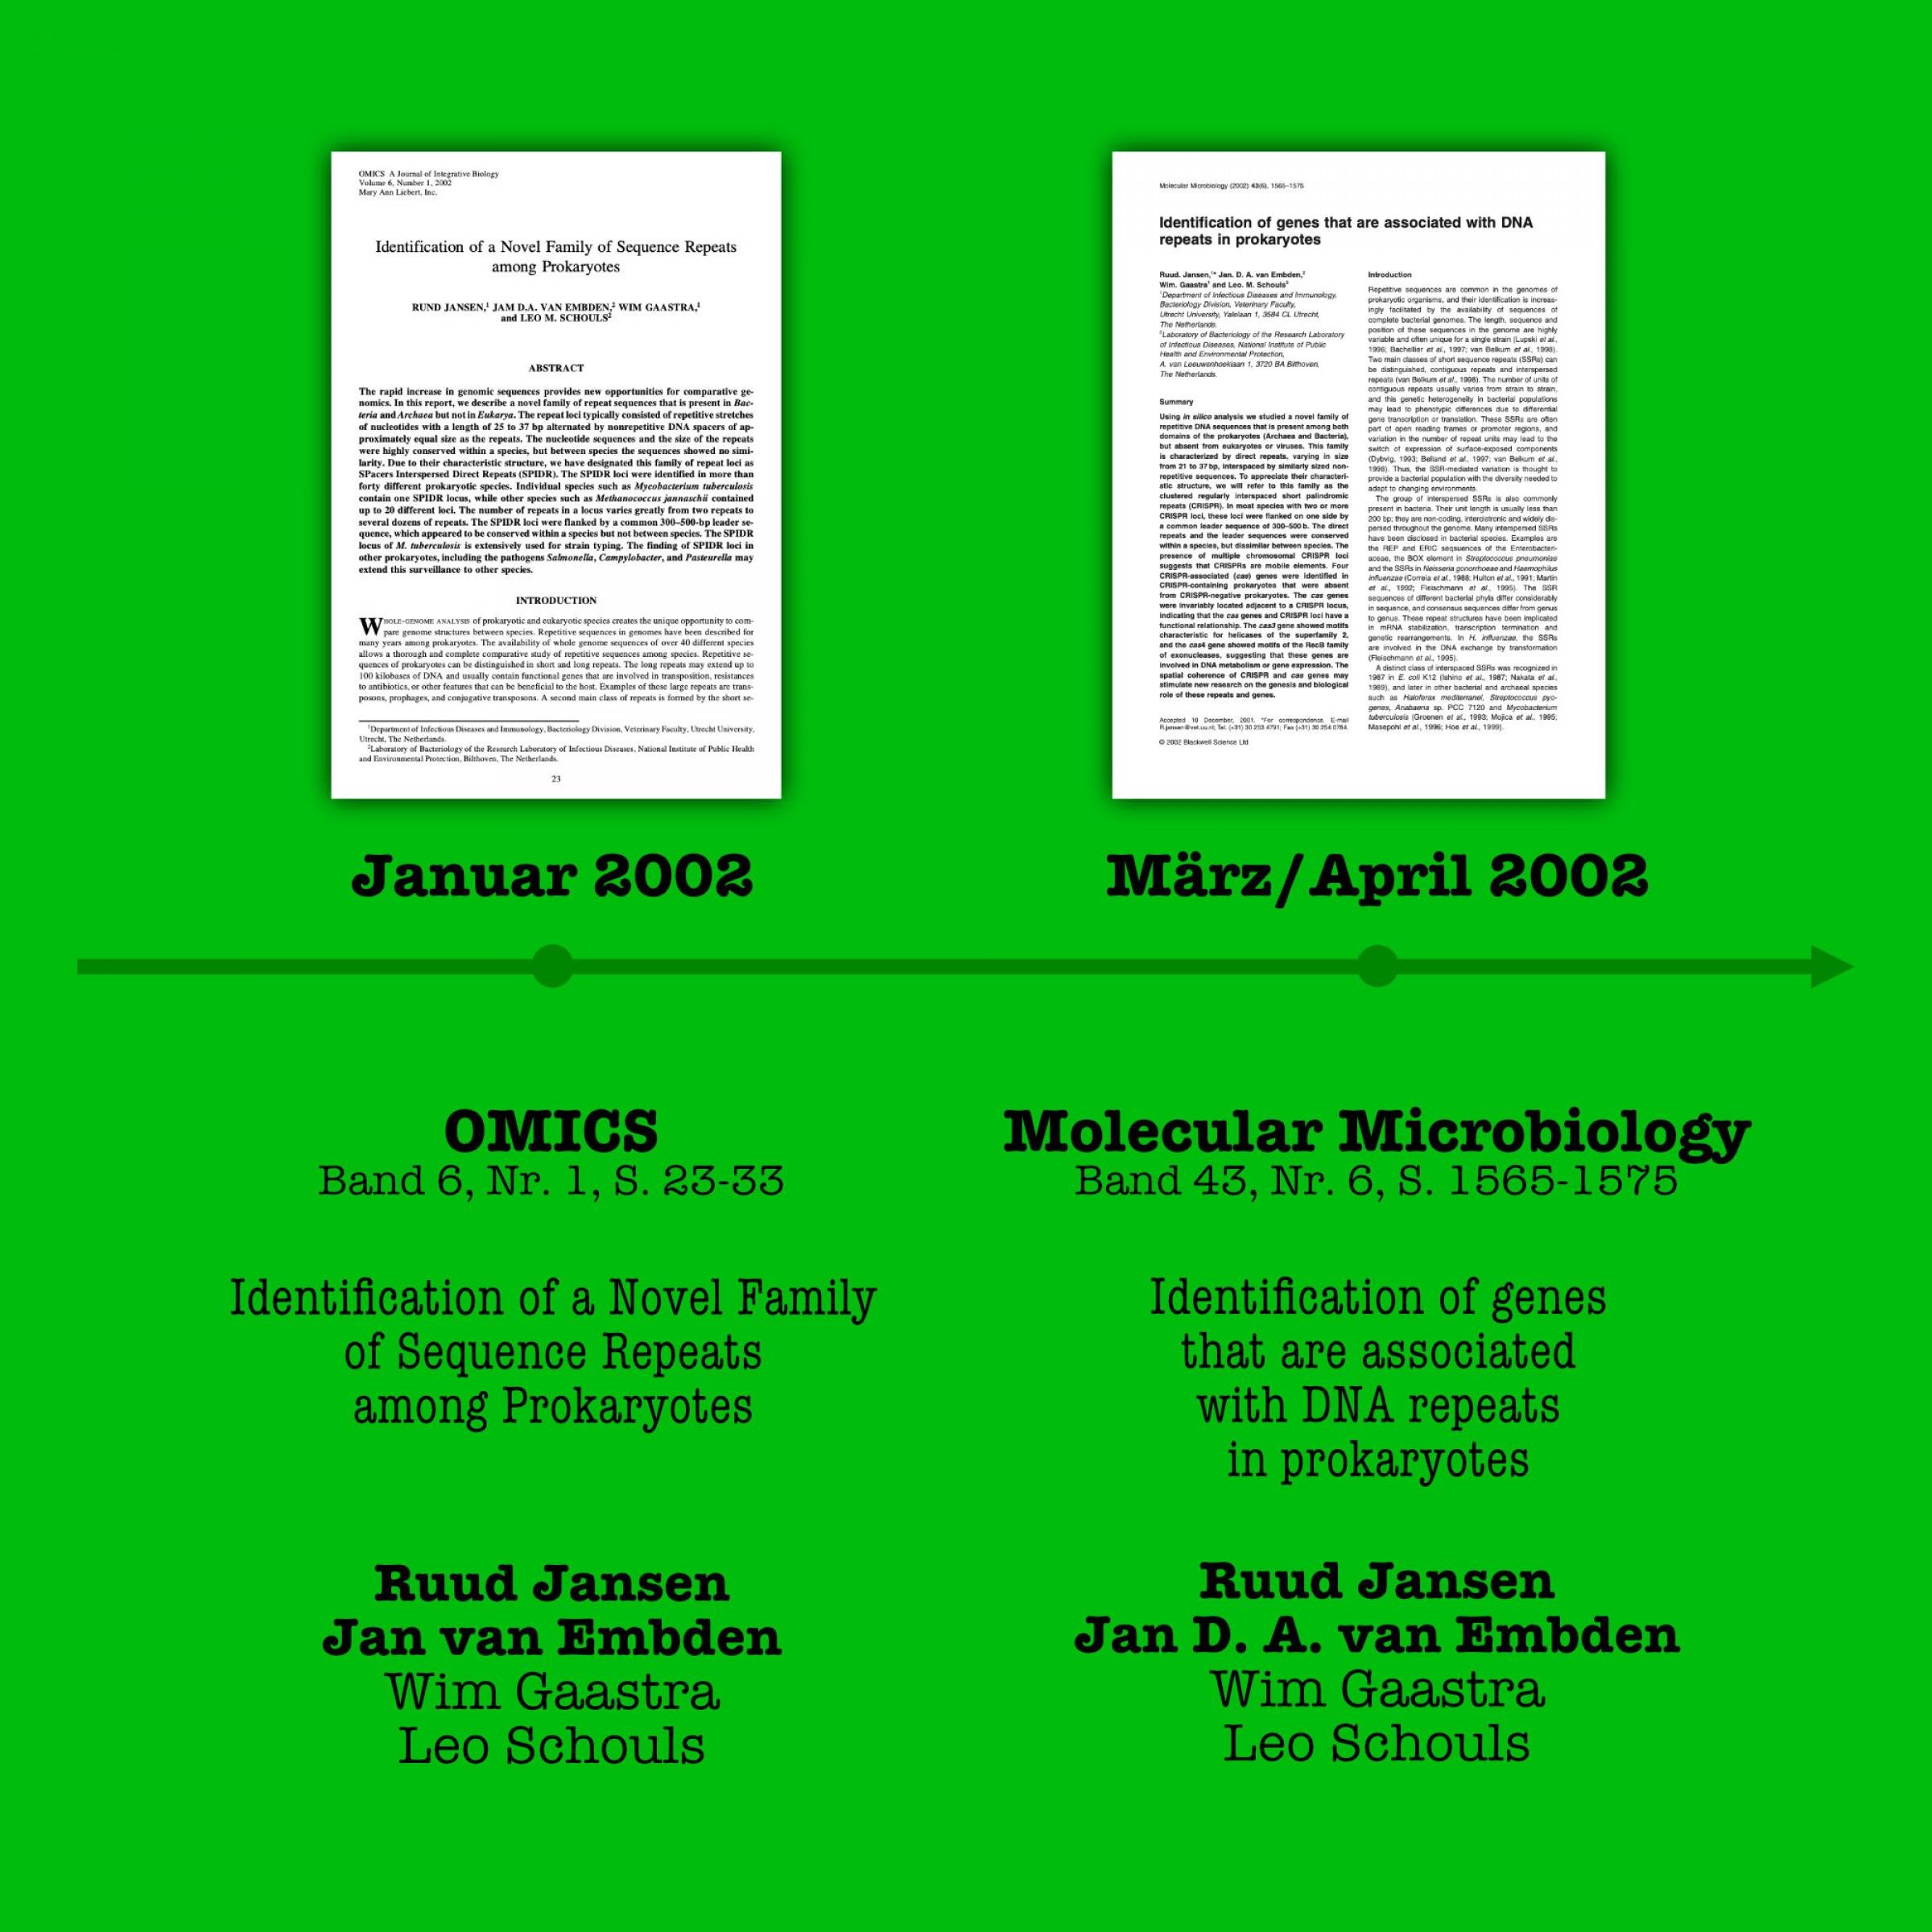 Die Titelseiten und bibliographischen Angaben der beiden Jansen et al. Artikel, die 2002 erscheinen und zum Teil dieselben Ergebnisse berichten.